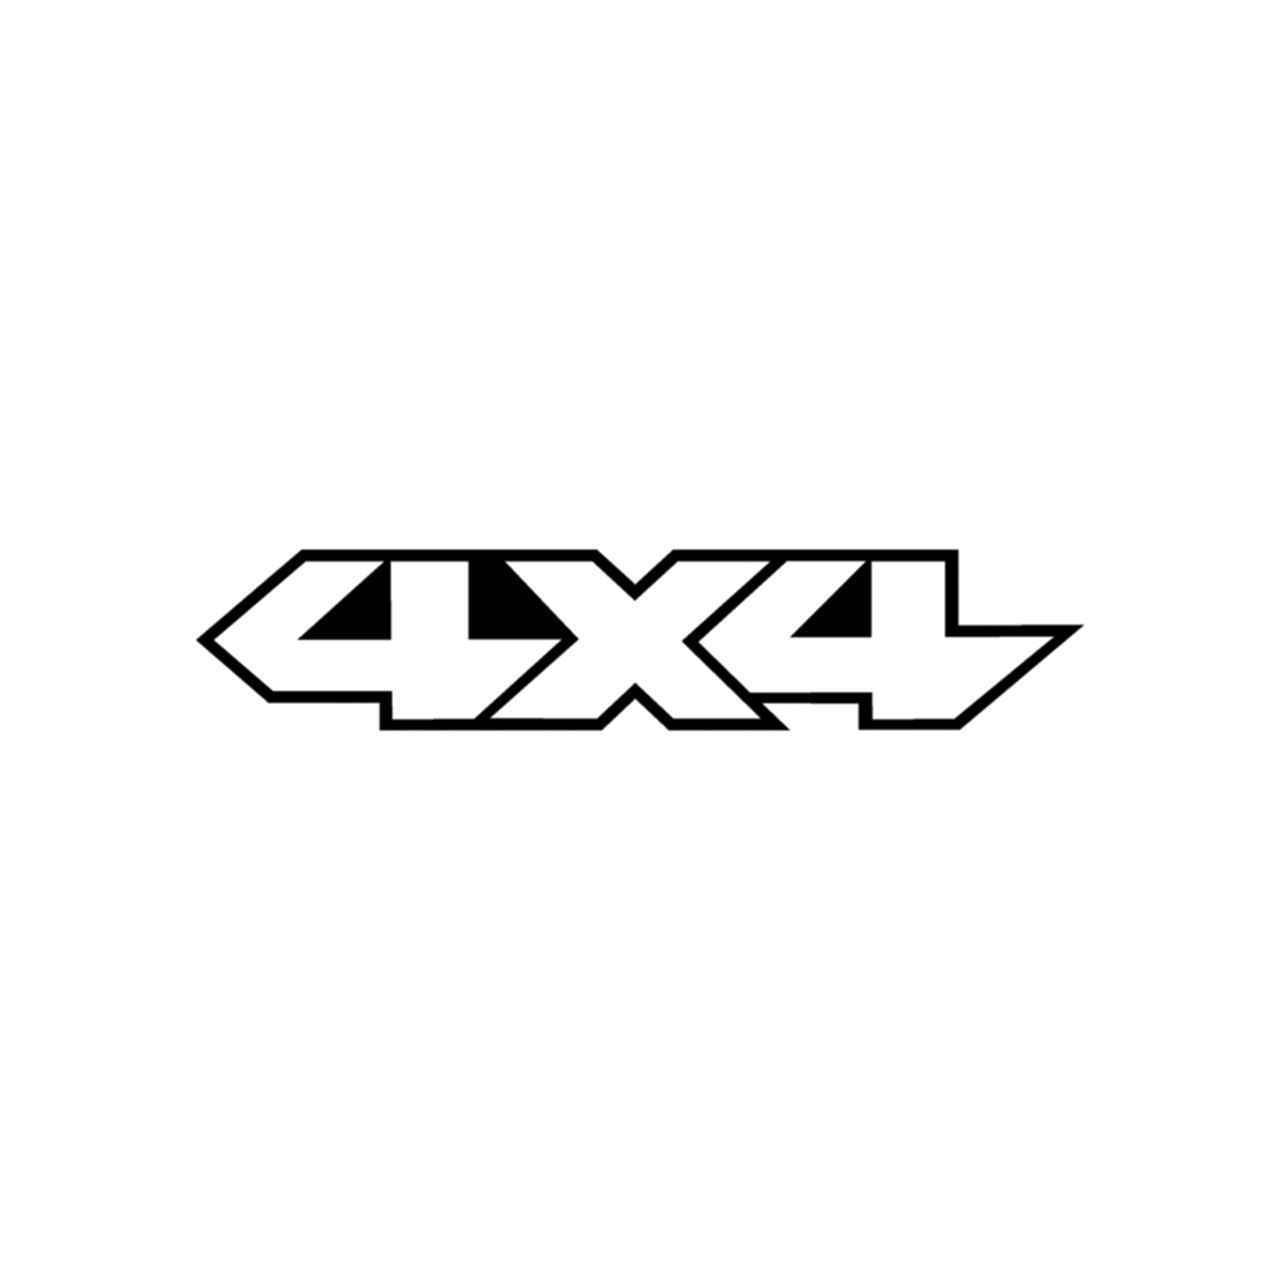 4x4 Logo - 4x4 Logo Set 21 Vinyl Decal